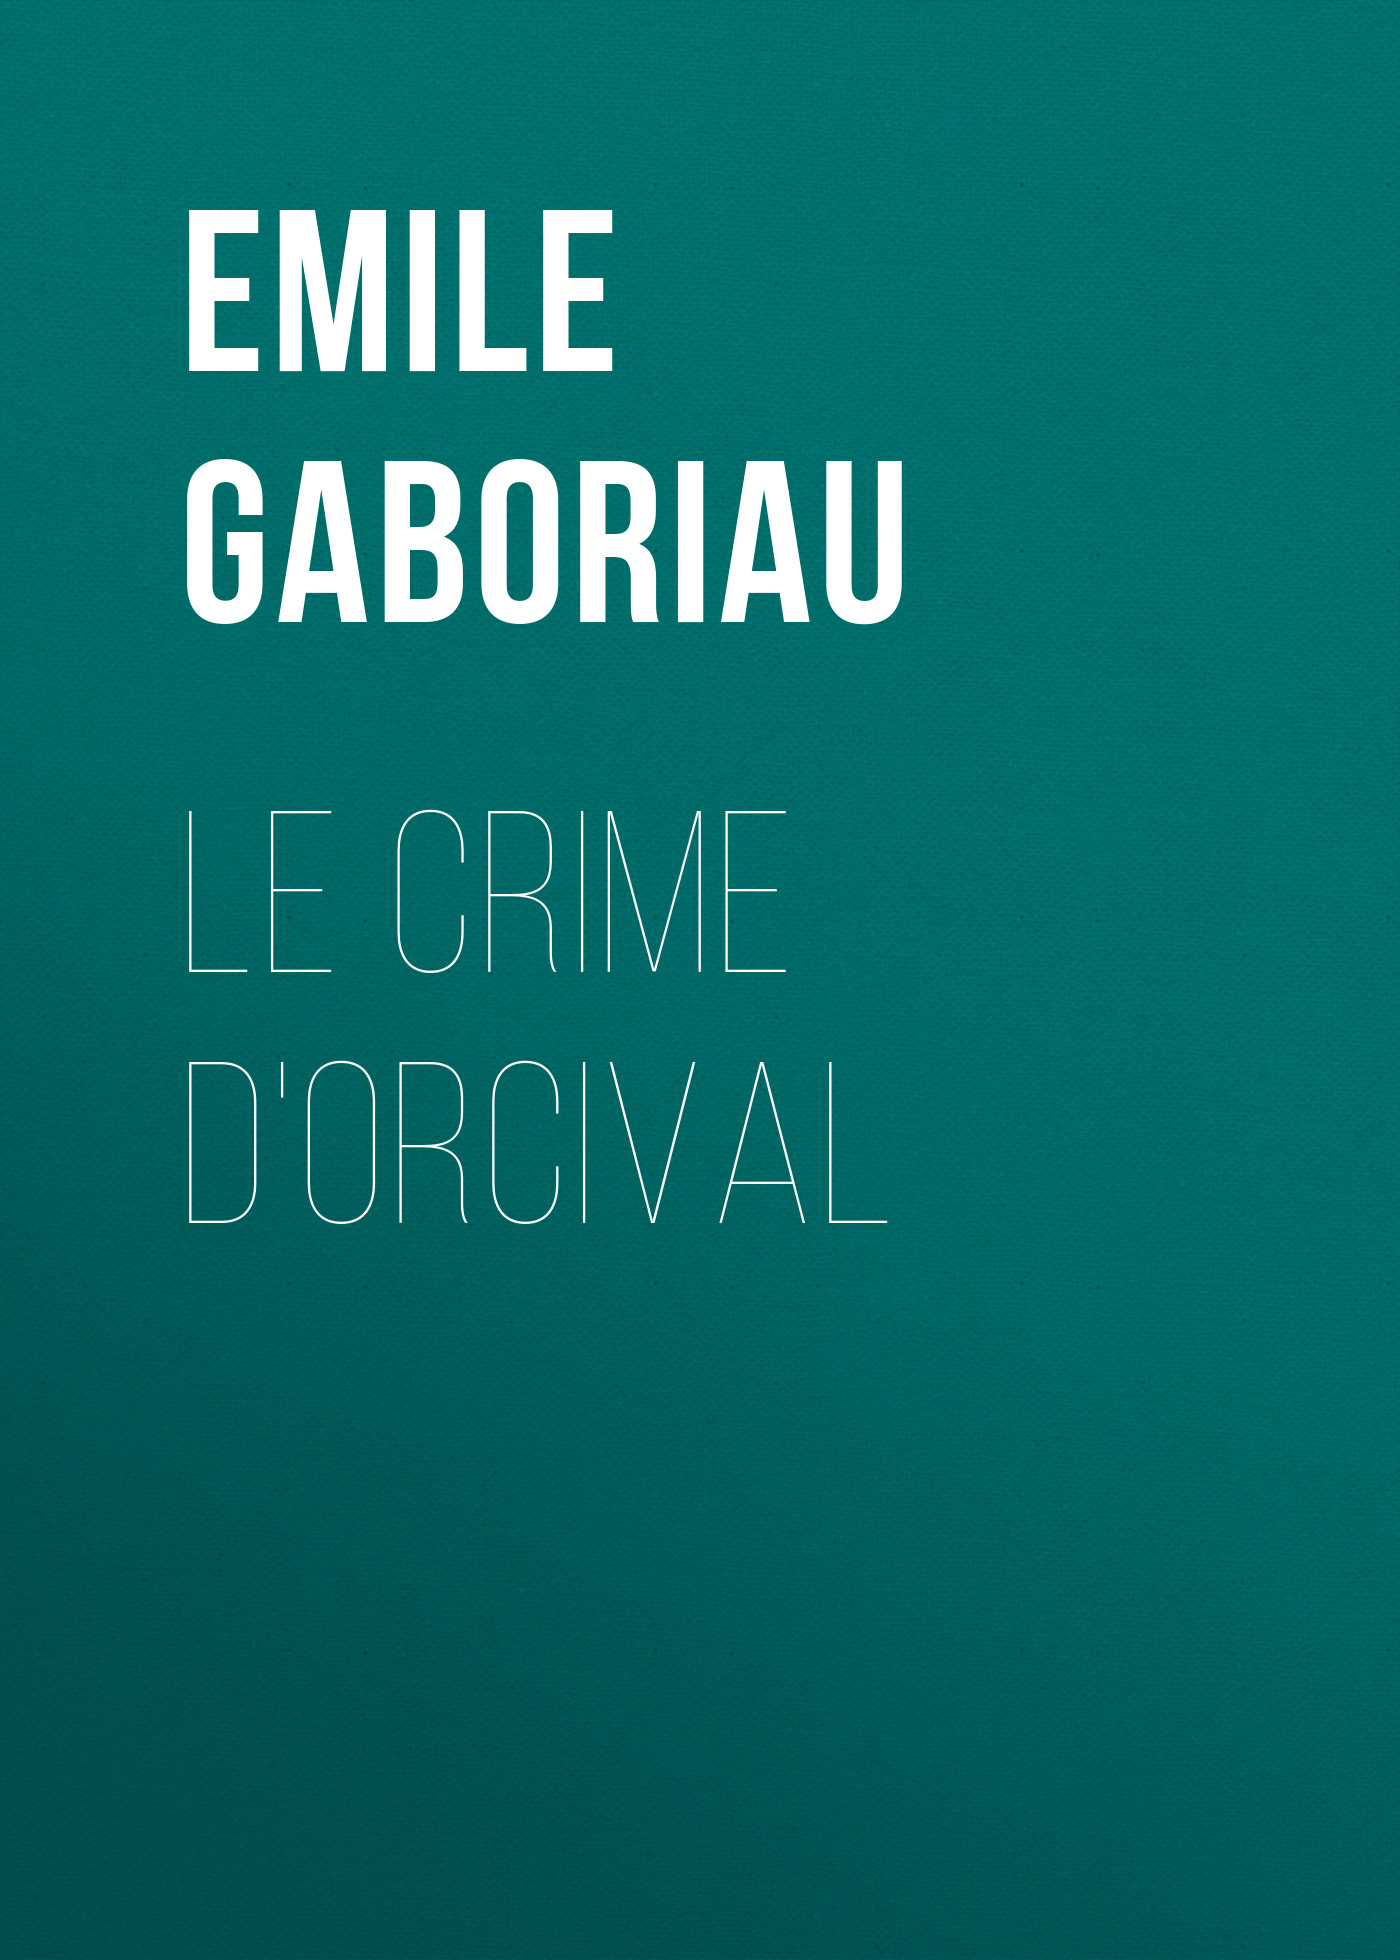 Книга Le crime d'Orcival из серии , созданная Emile Gaboriau, может относится к жанру Зарубежная старинная литература, Зарубежная классика. Стоимость электронной книги Le crime d'Orcival с идентификатором 24859179 составляет 0 руб.